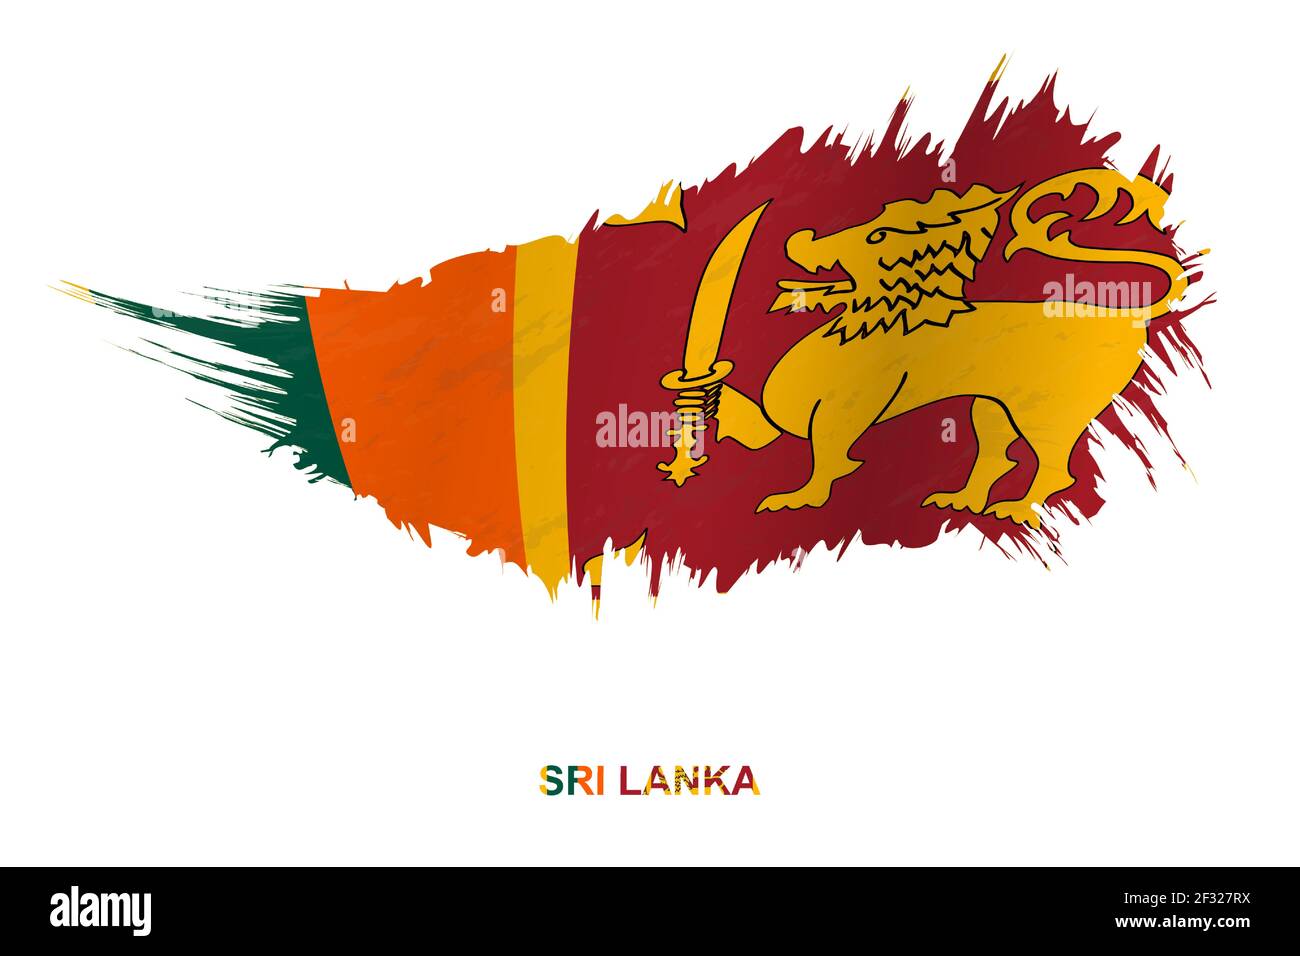 Flag of Sri Lanka in grunge style with waving effect, vector grunge brush stroke flag. Stock Vector